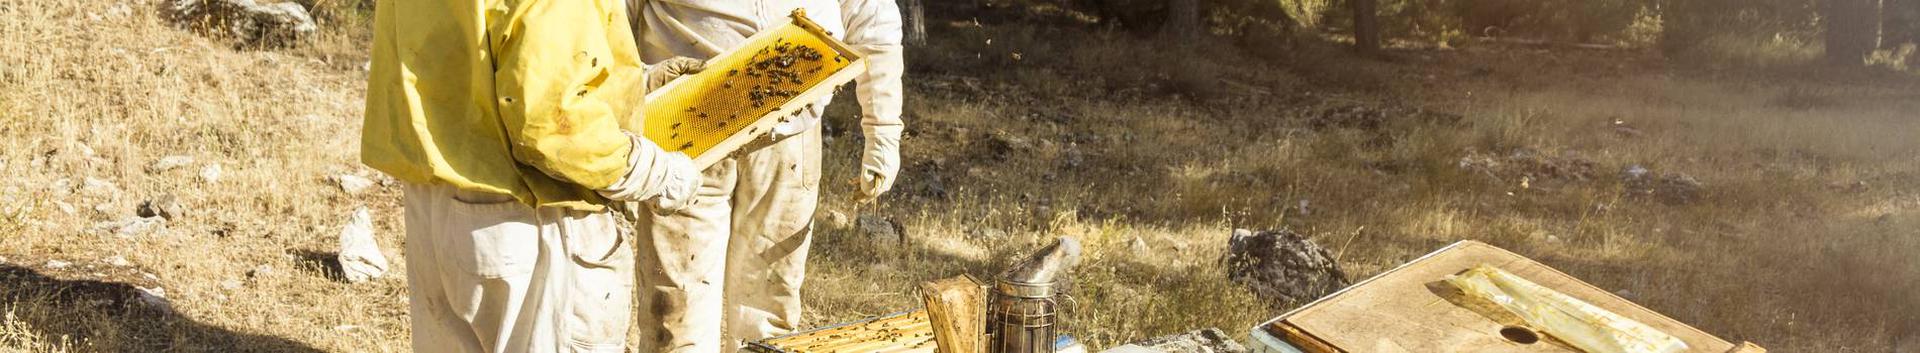 Läänemaa liigirikas loodus, mahepõllumajandus ja hajaasustus tagavad maitsva ja puhta meesaagi. Mesila asub Matsalu Rahvuspargis Kasari luha piiril.